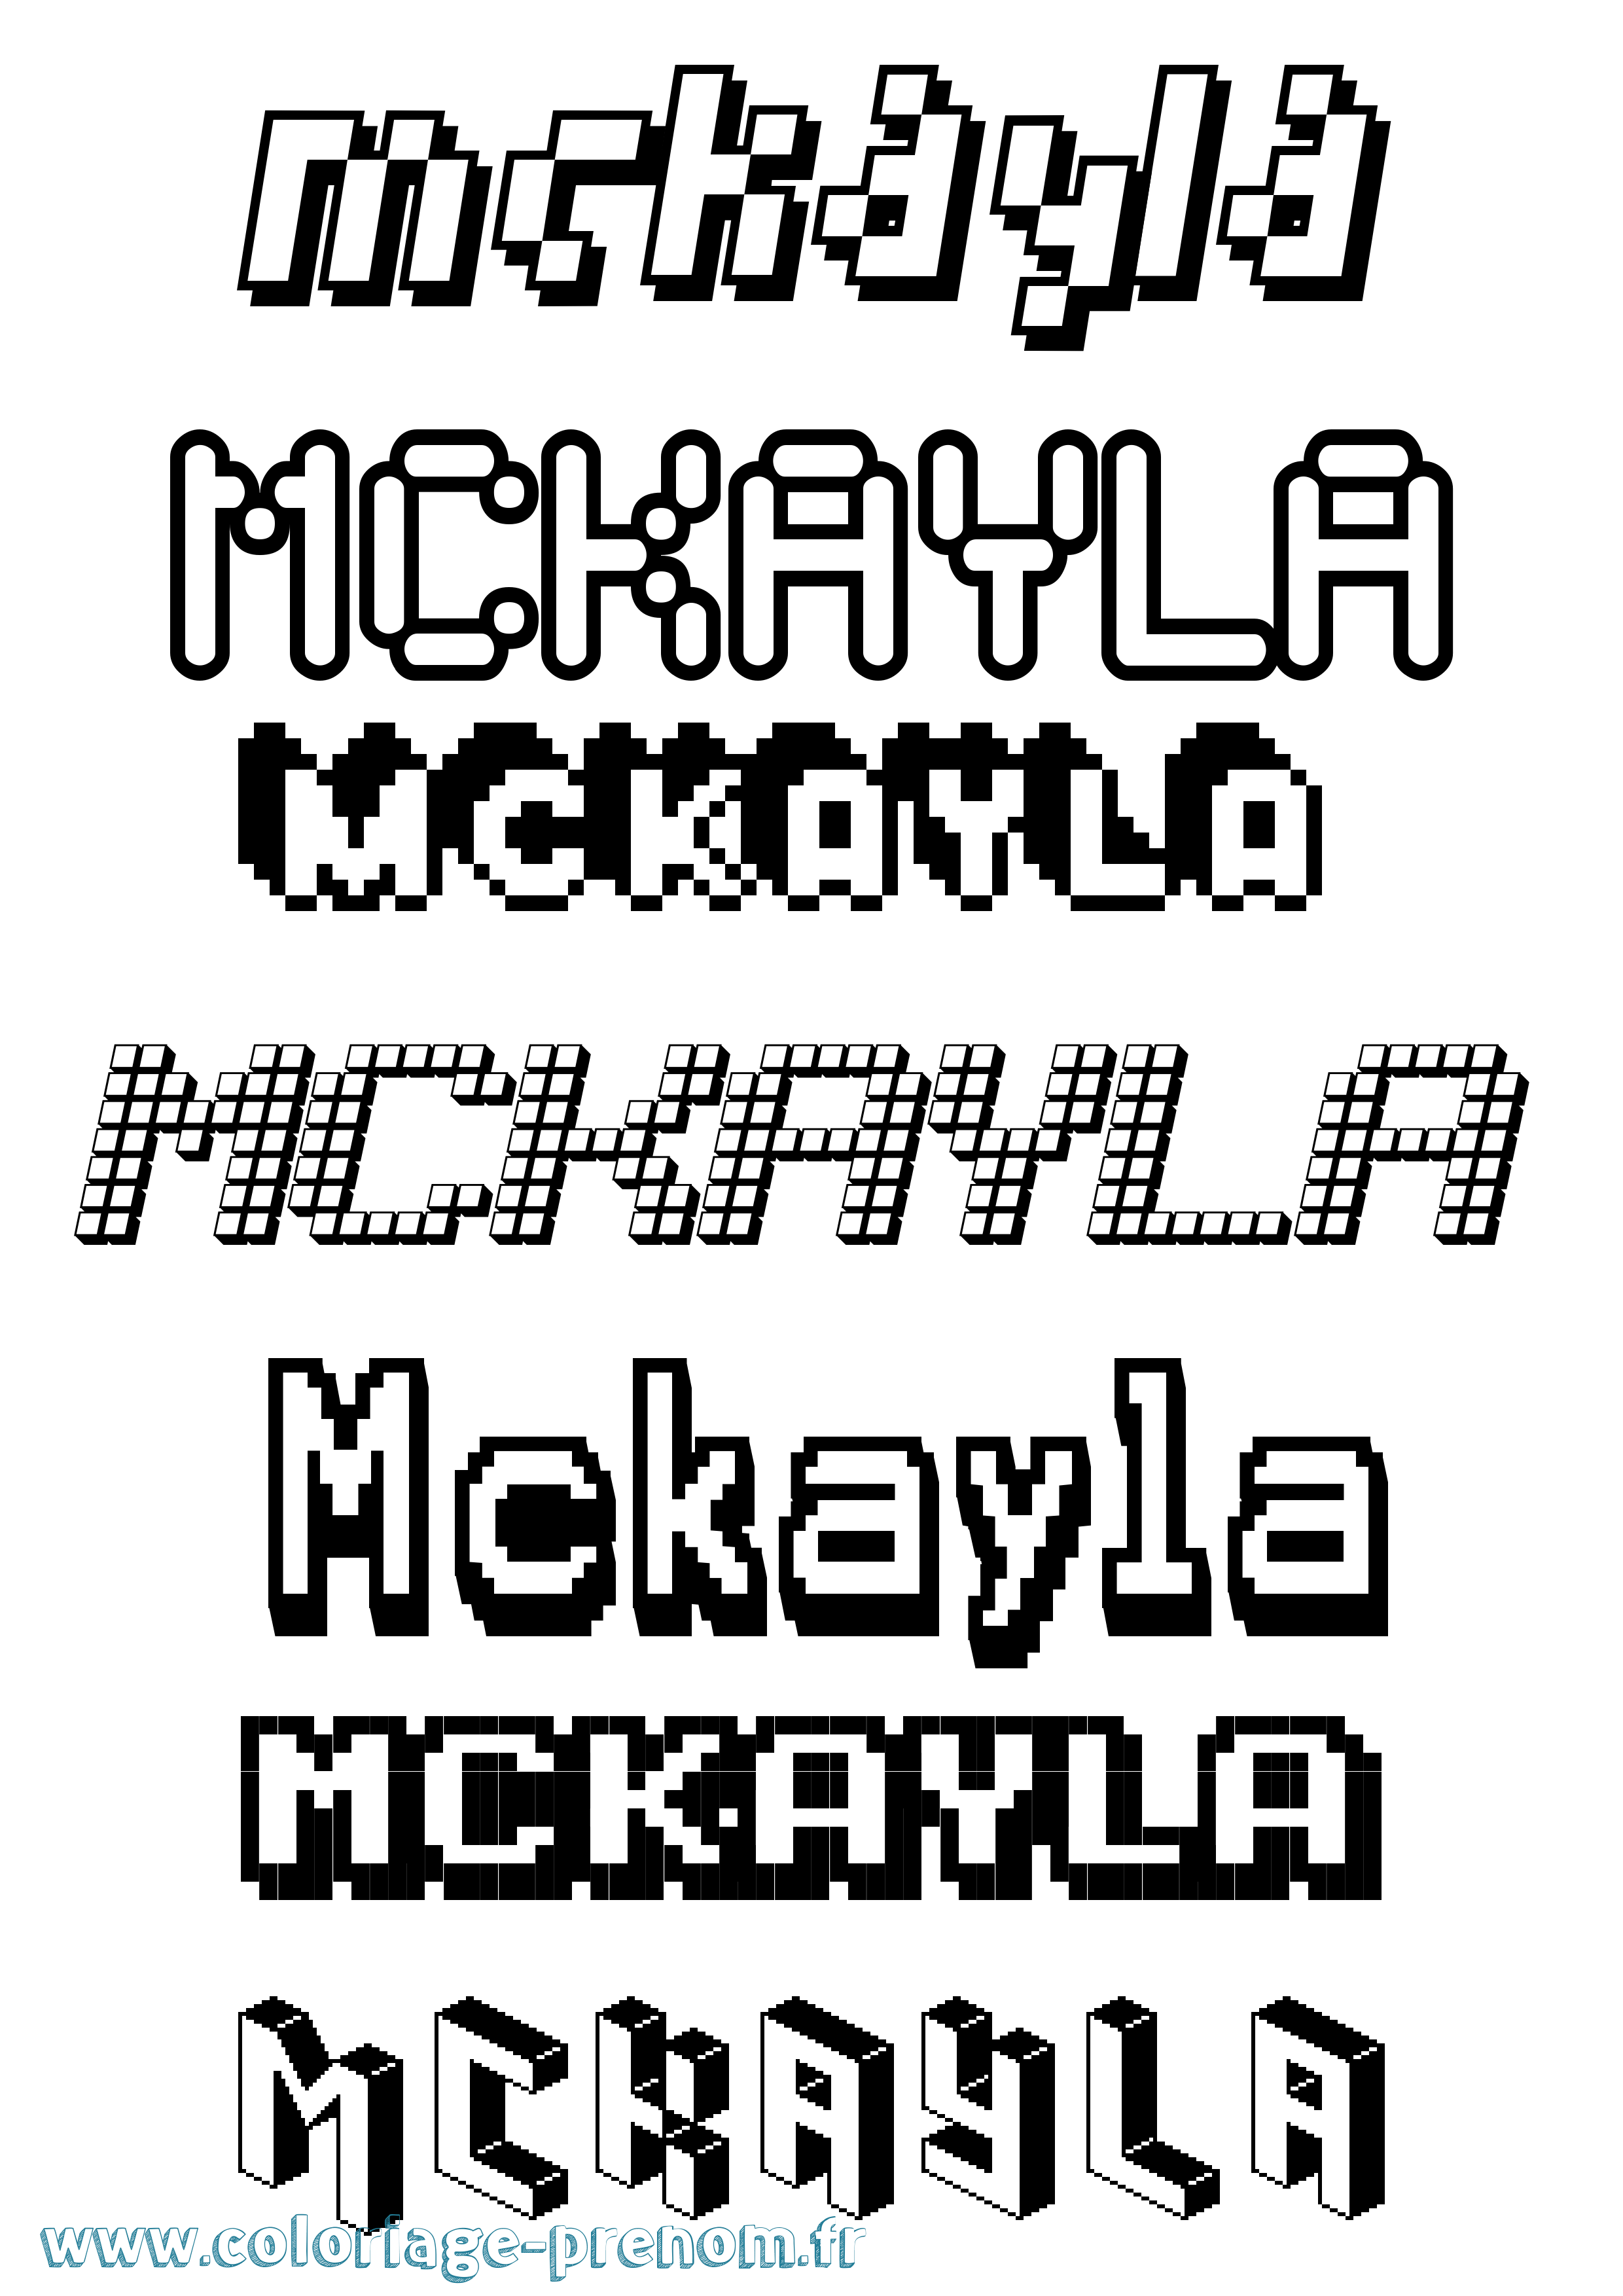 Coloriage prénom Mckayla Pixel